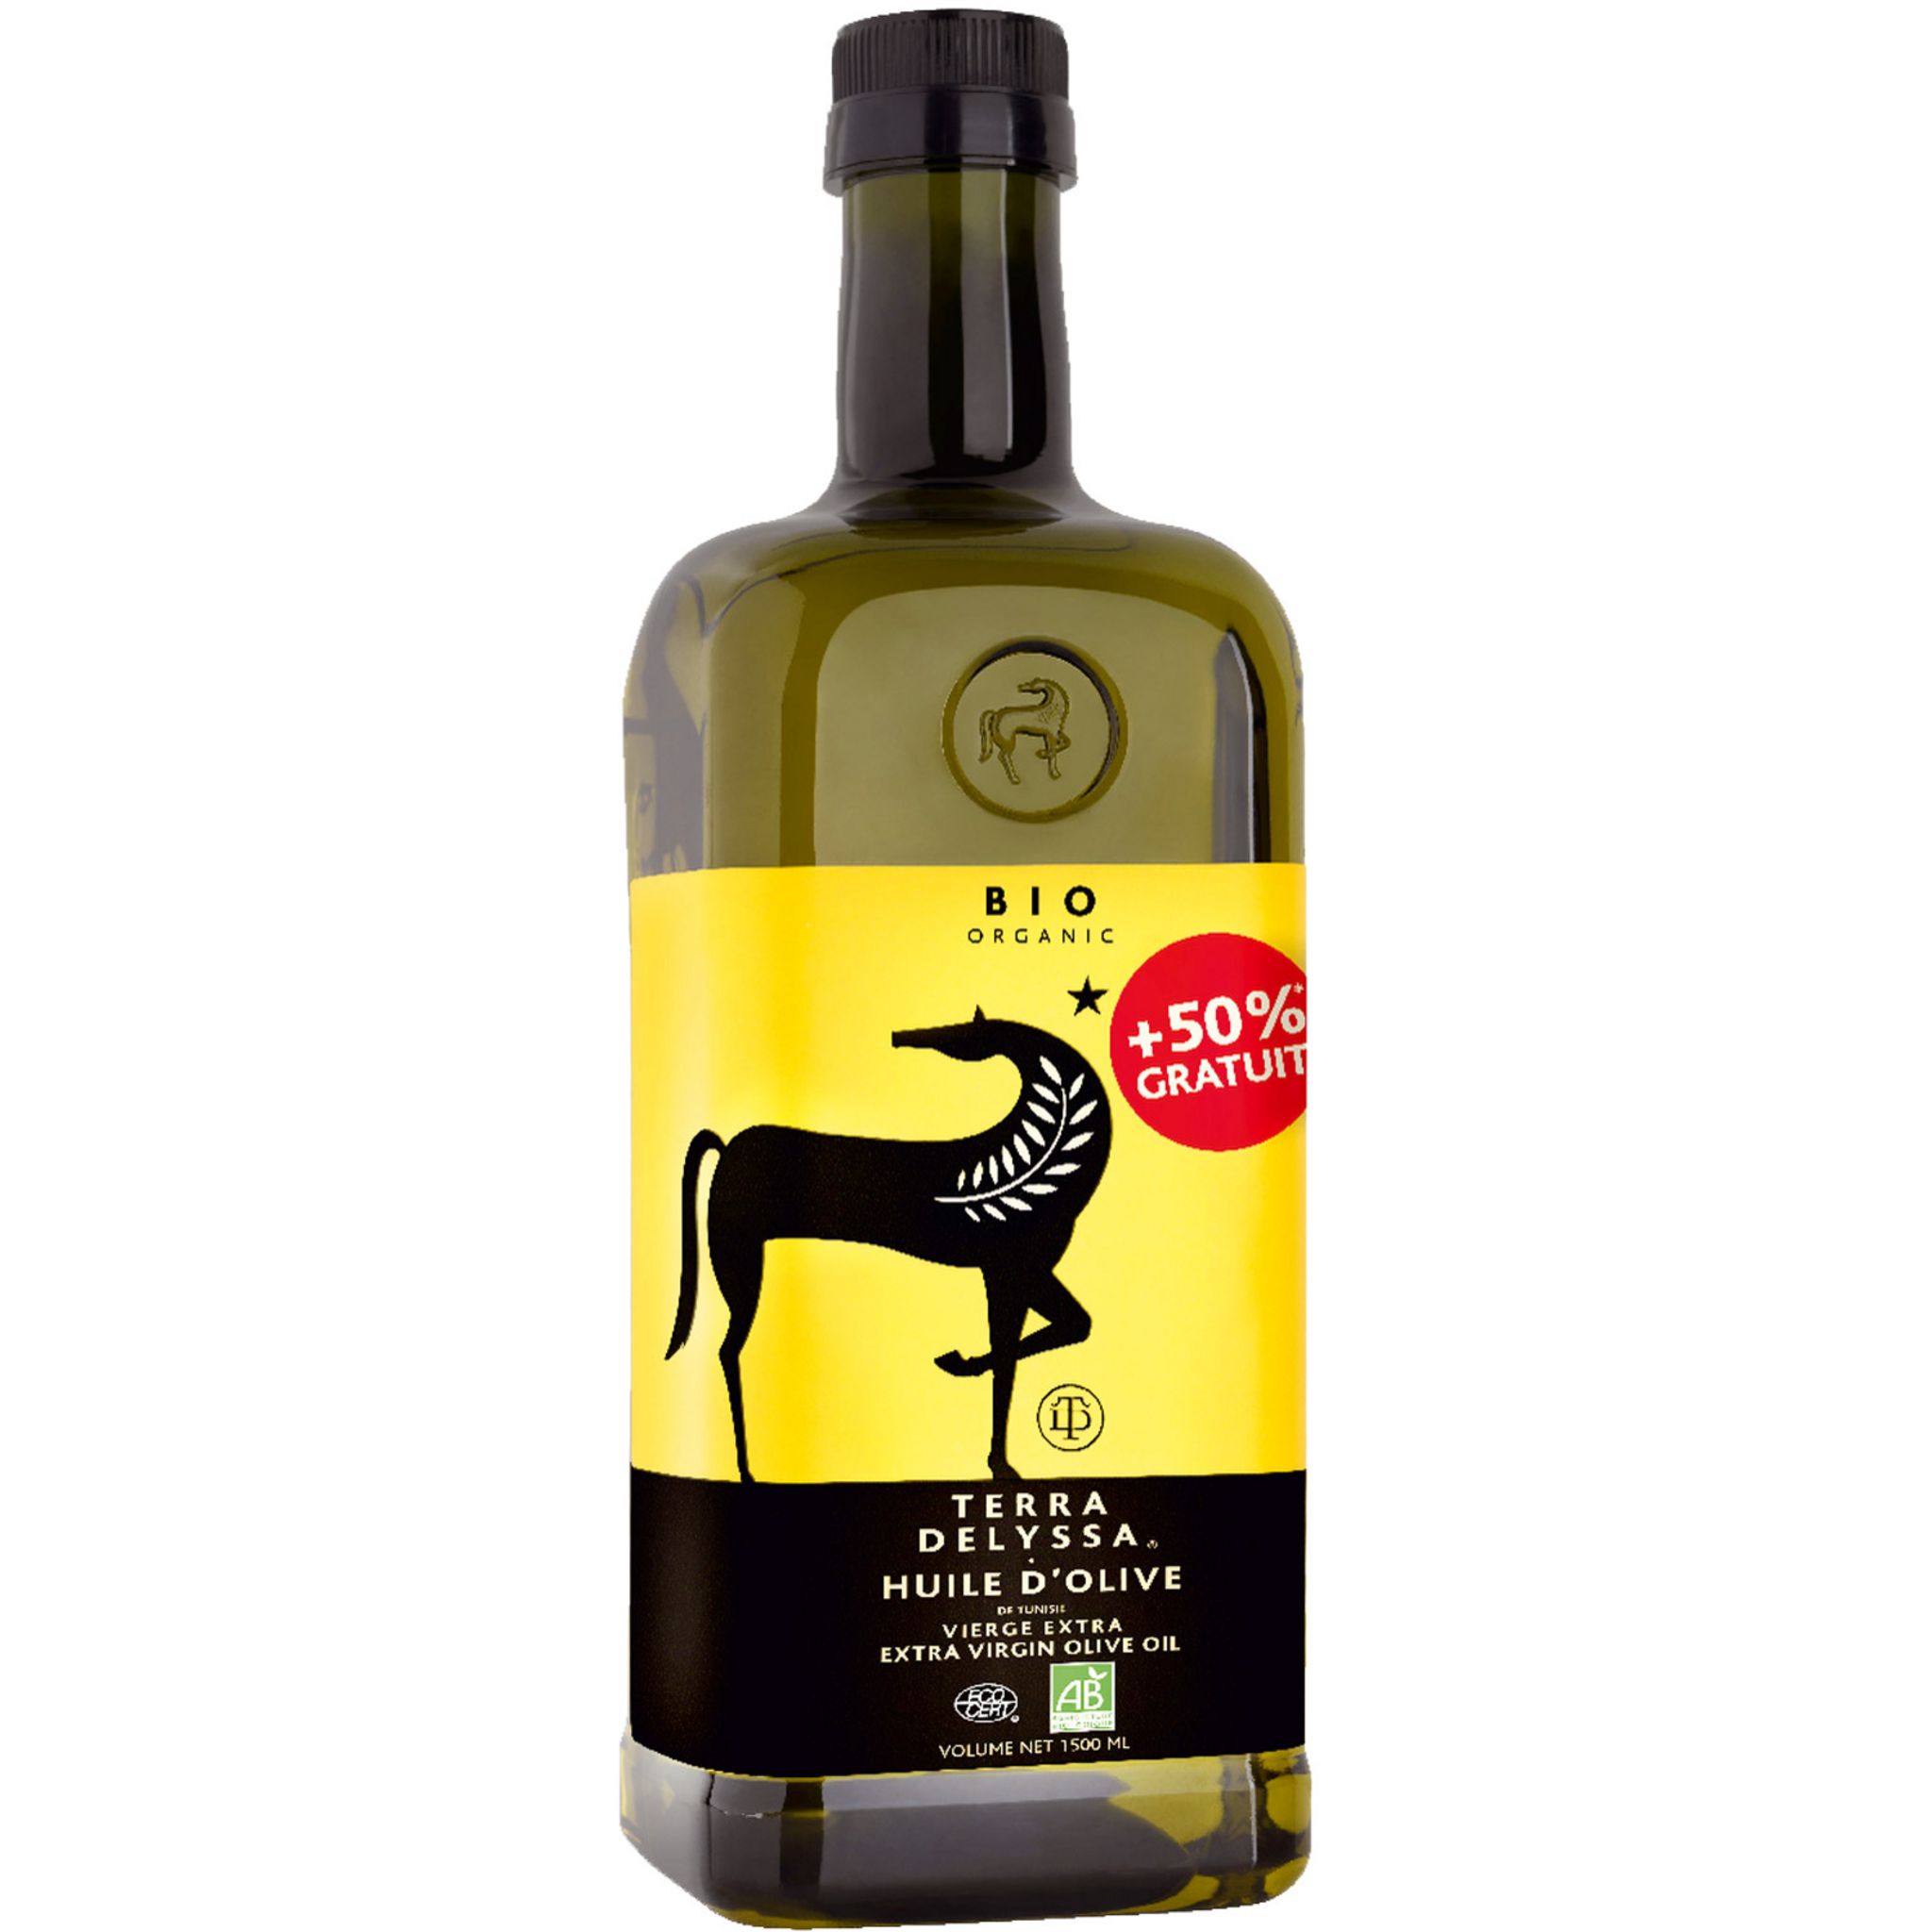 AUCHAN Huile d'olive vierge extra classique origine Espagne 1,5l pas cher 